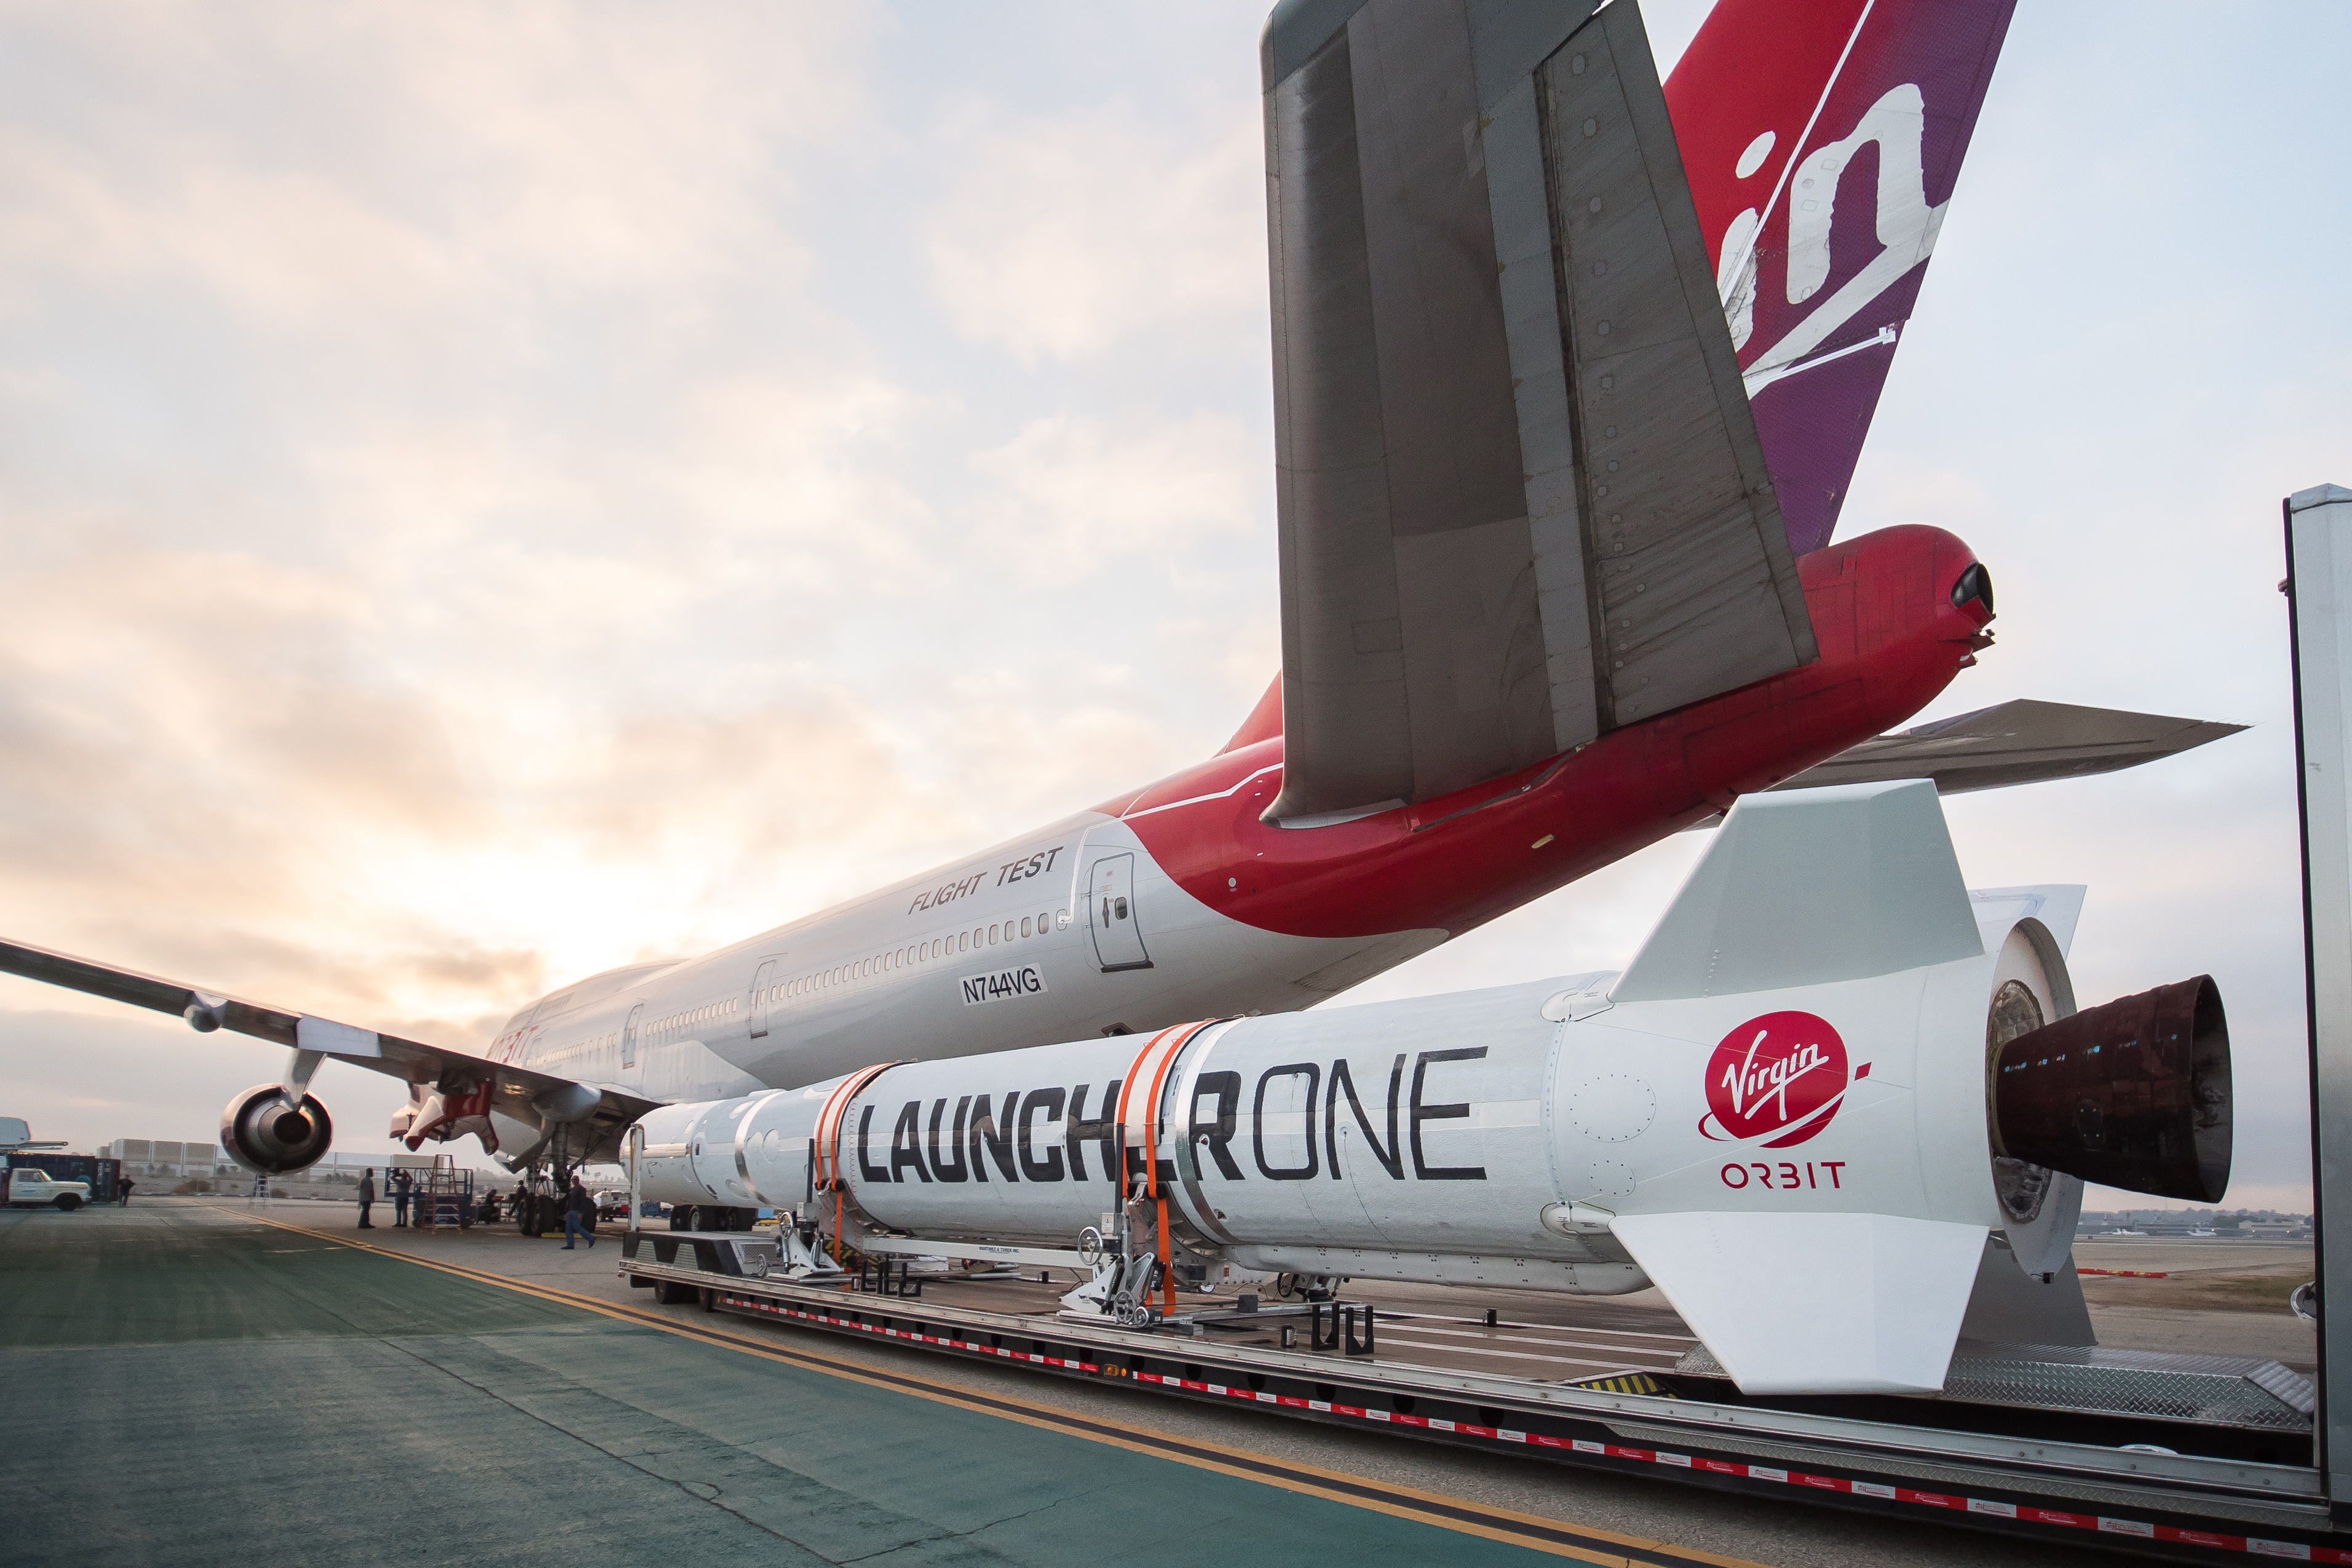 Mega-Plane Developer Sets Sights on Bankrupt Virgin Orbit Acquisition